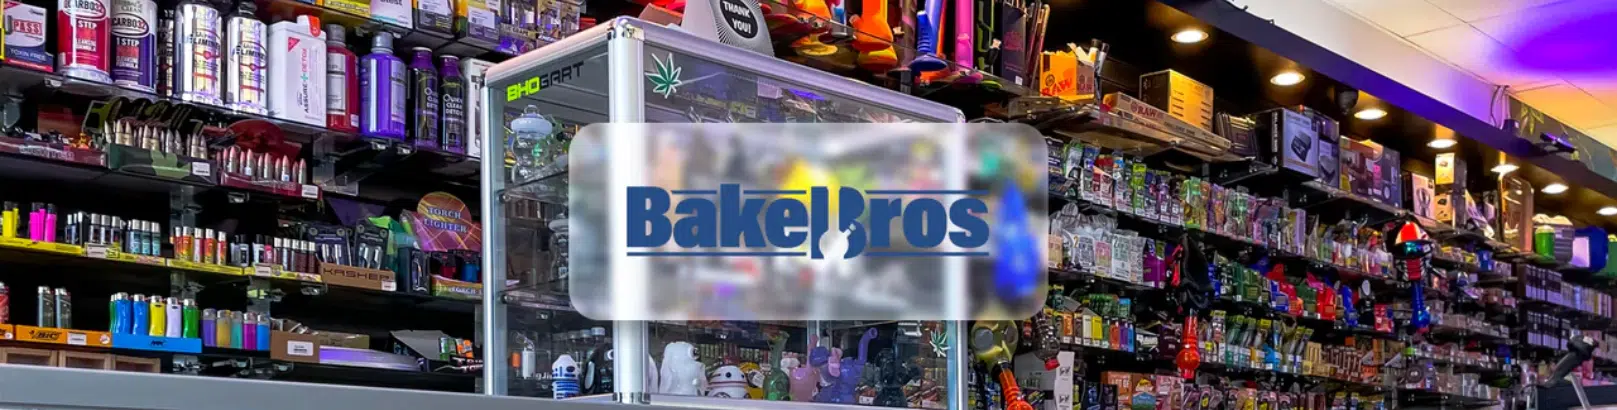 image of bake bros smoke shop